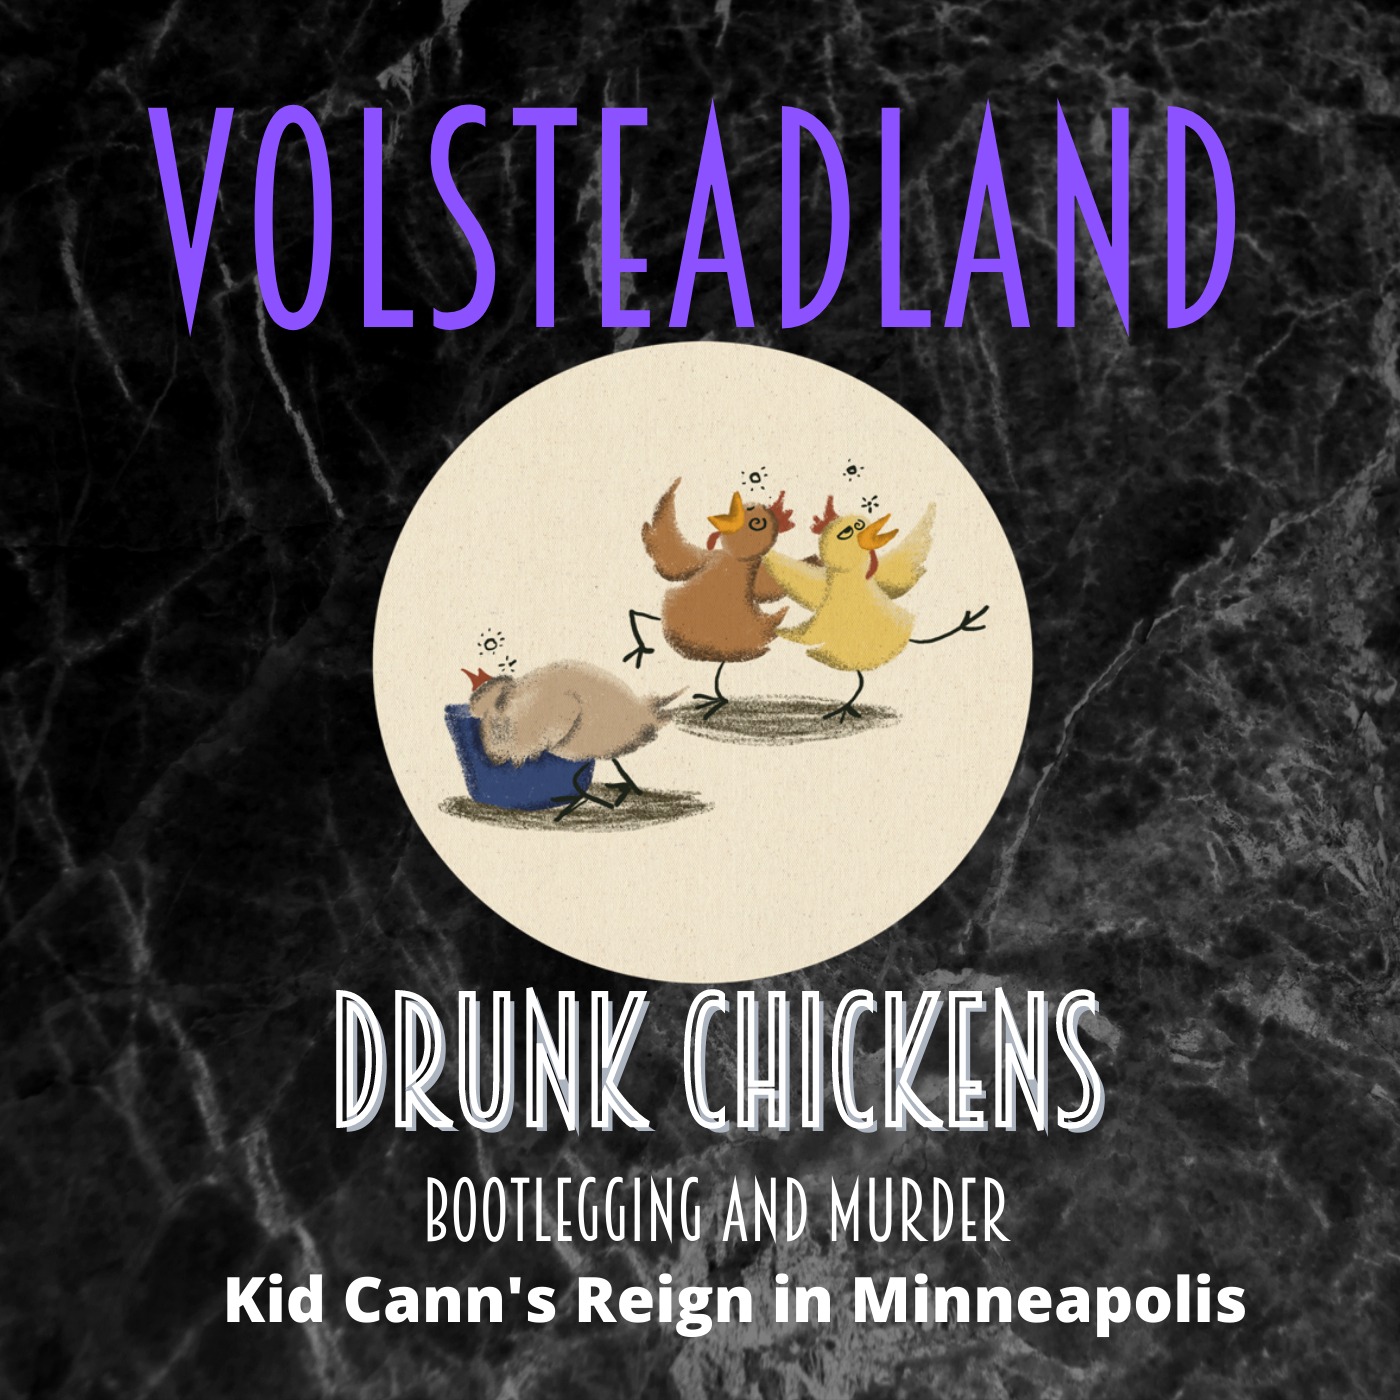 Volsteadland: Drunk Chickens